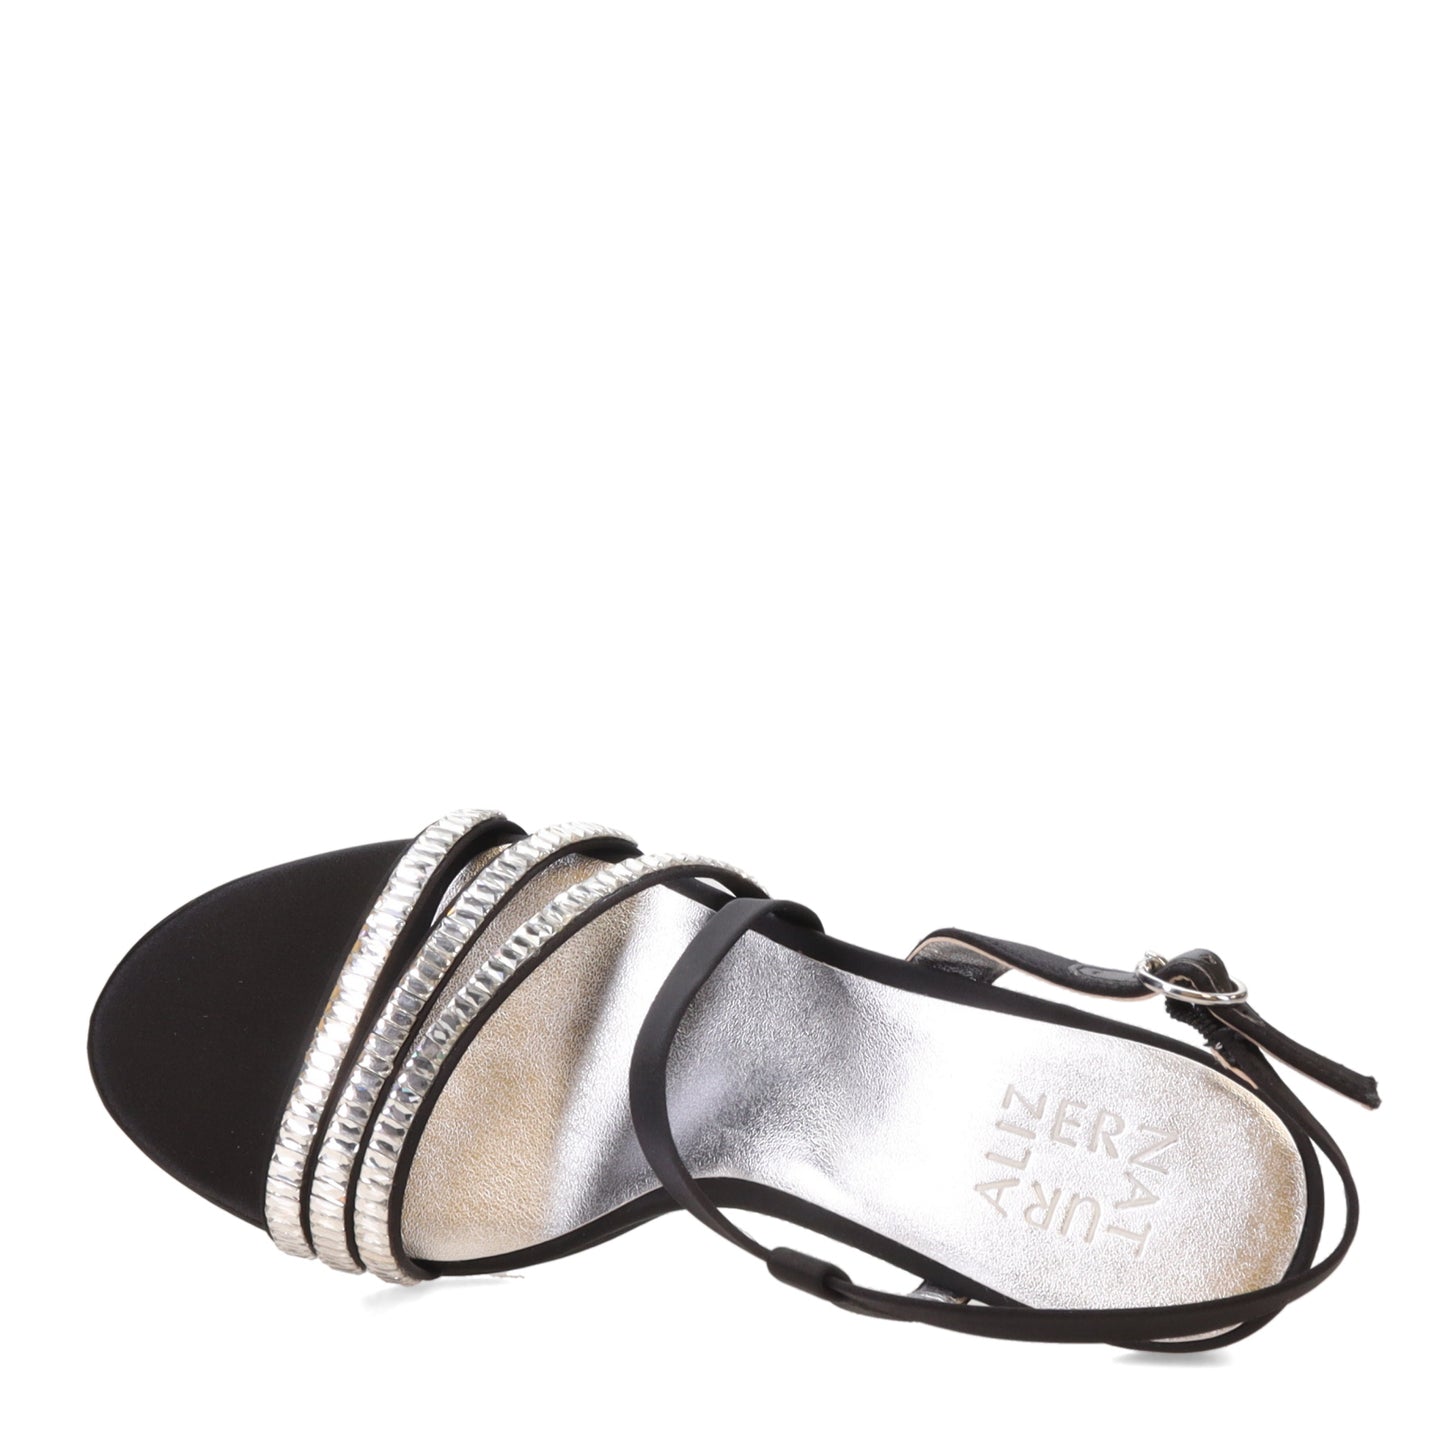 Peltz Shoes  Women's Naturalizer Kimberly 2 Sandal Black I9071F1001